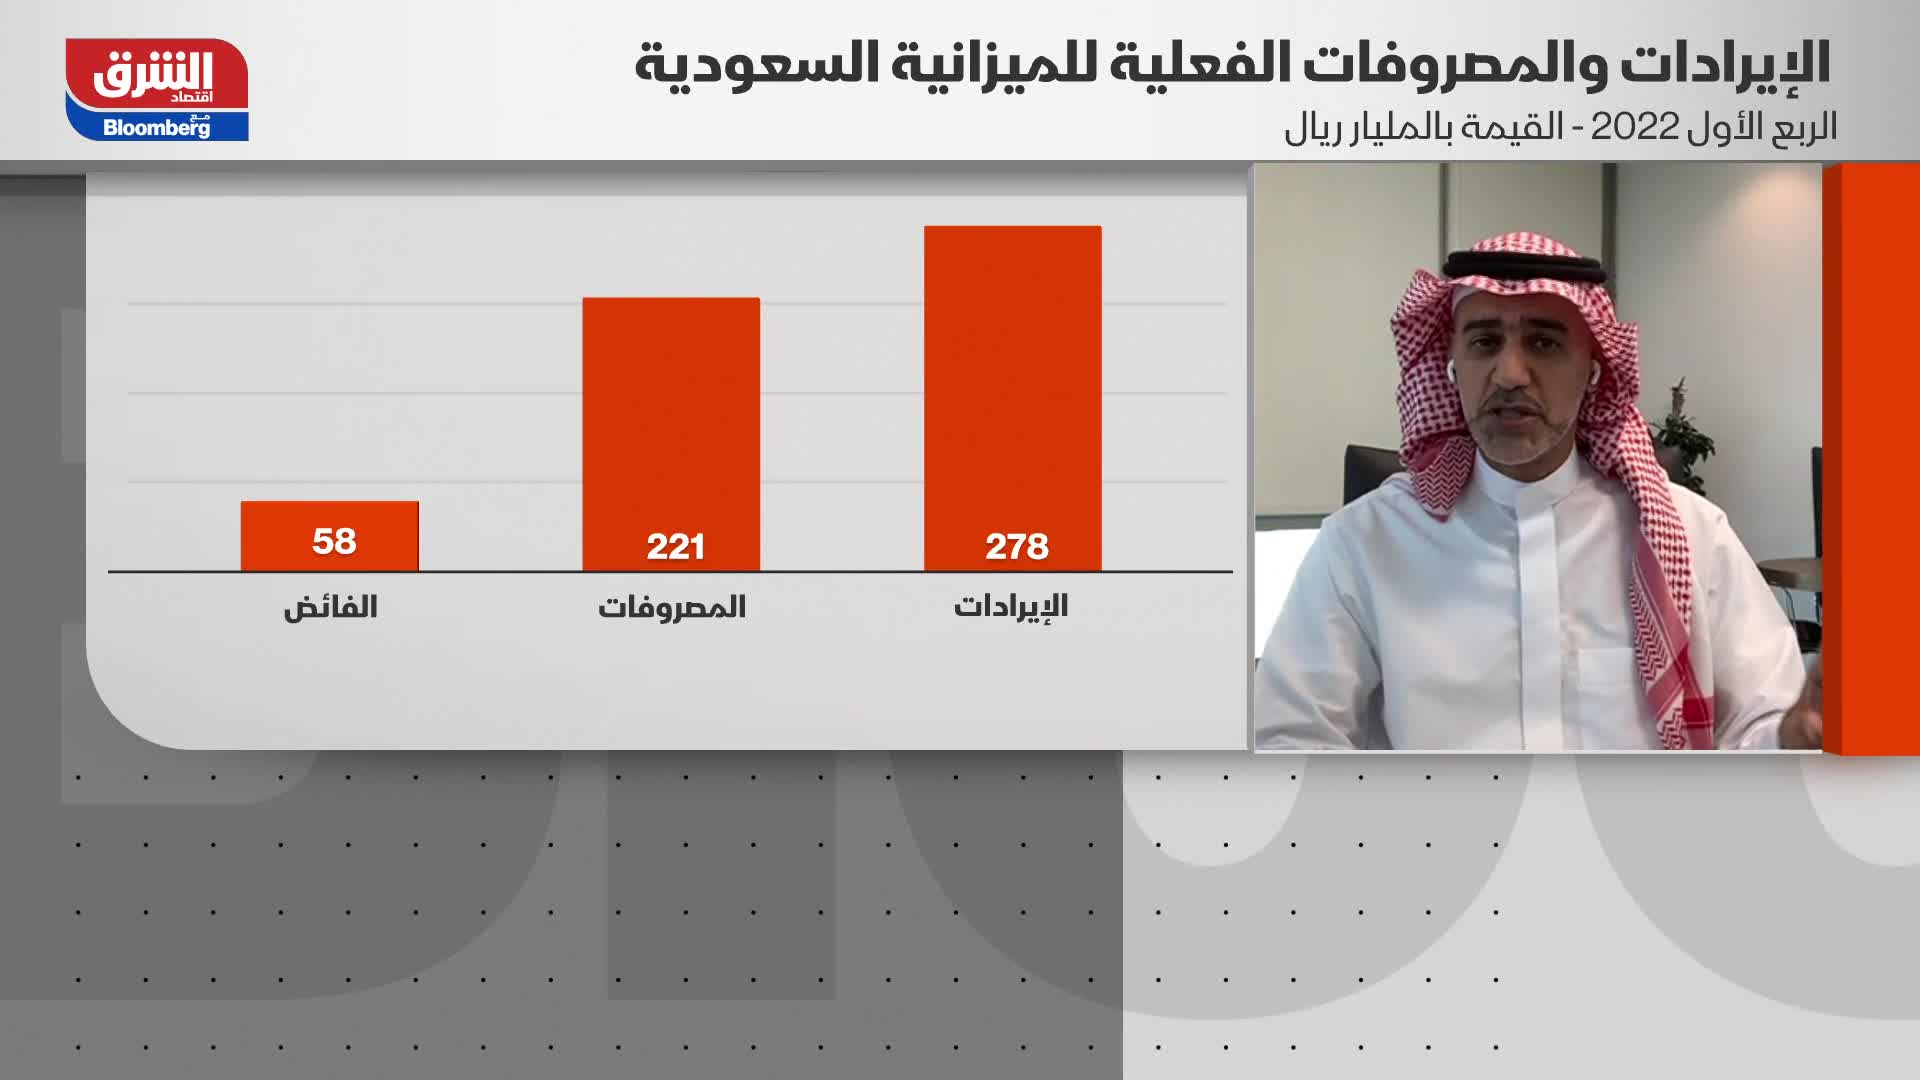 عبد الله الحامد: الميزانية السعودية حققت أعلى فائض بلغ 57 مليار ريال بدعم من إيرادات النفط